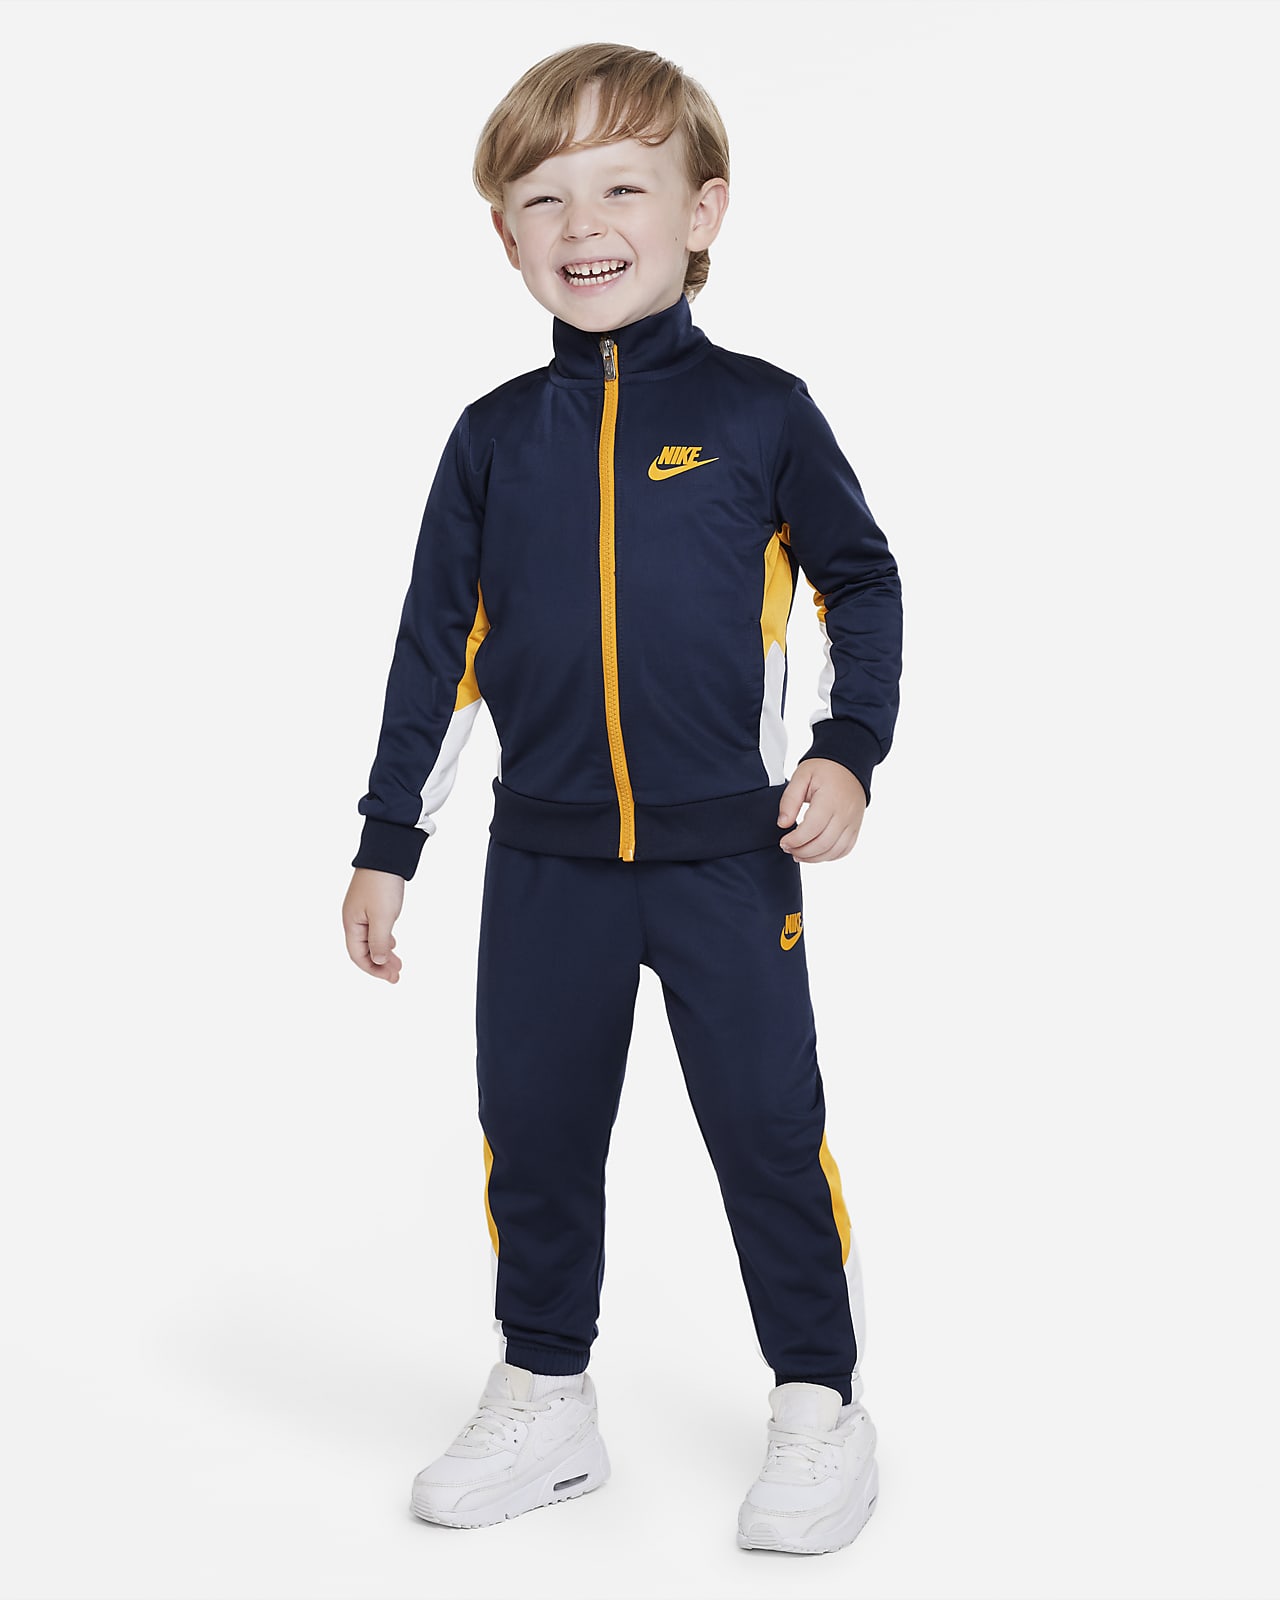 Nike Toddler Tracksuit